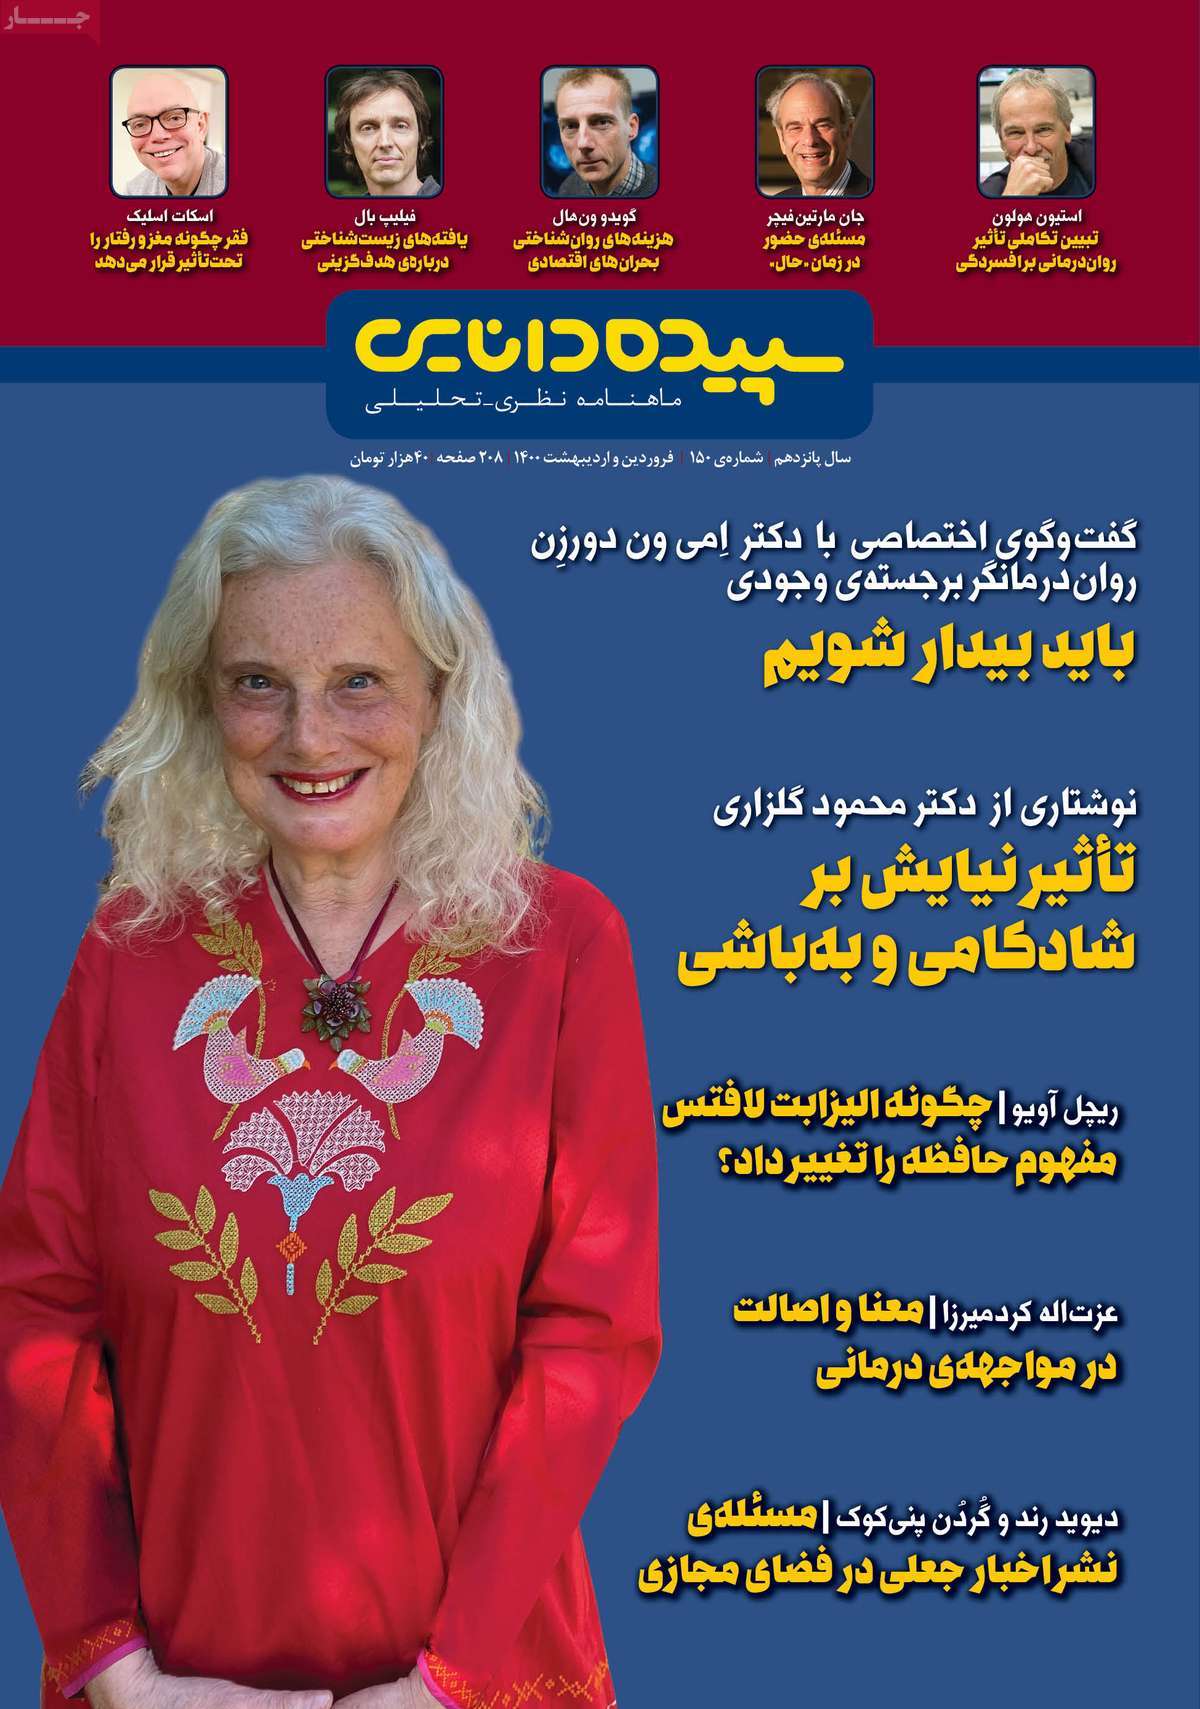 مجله سپیده دانایی